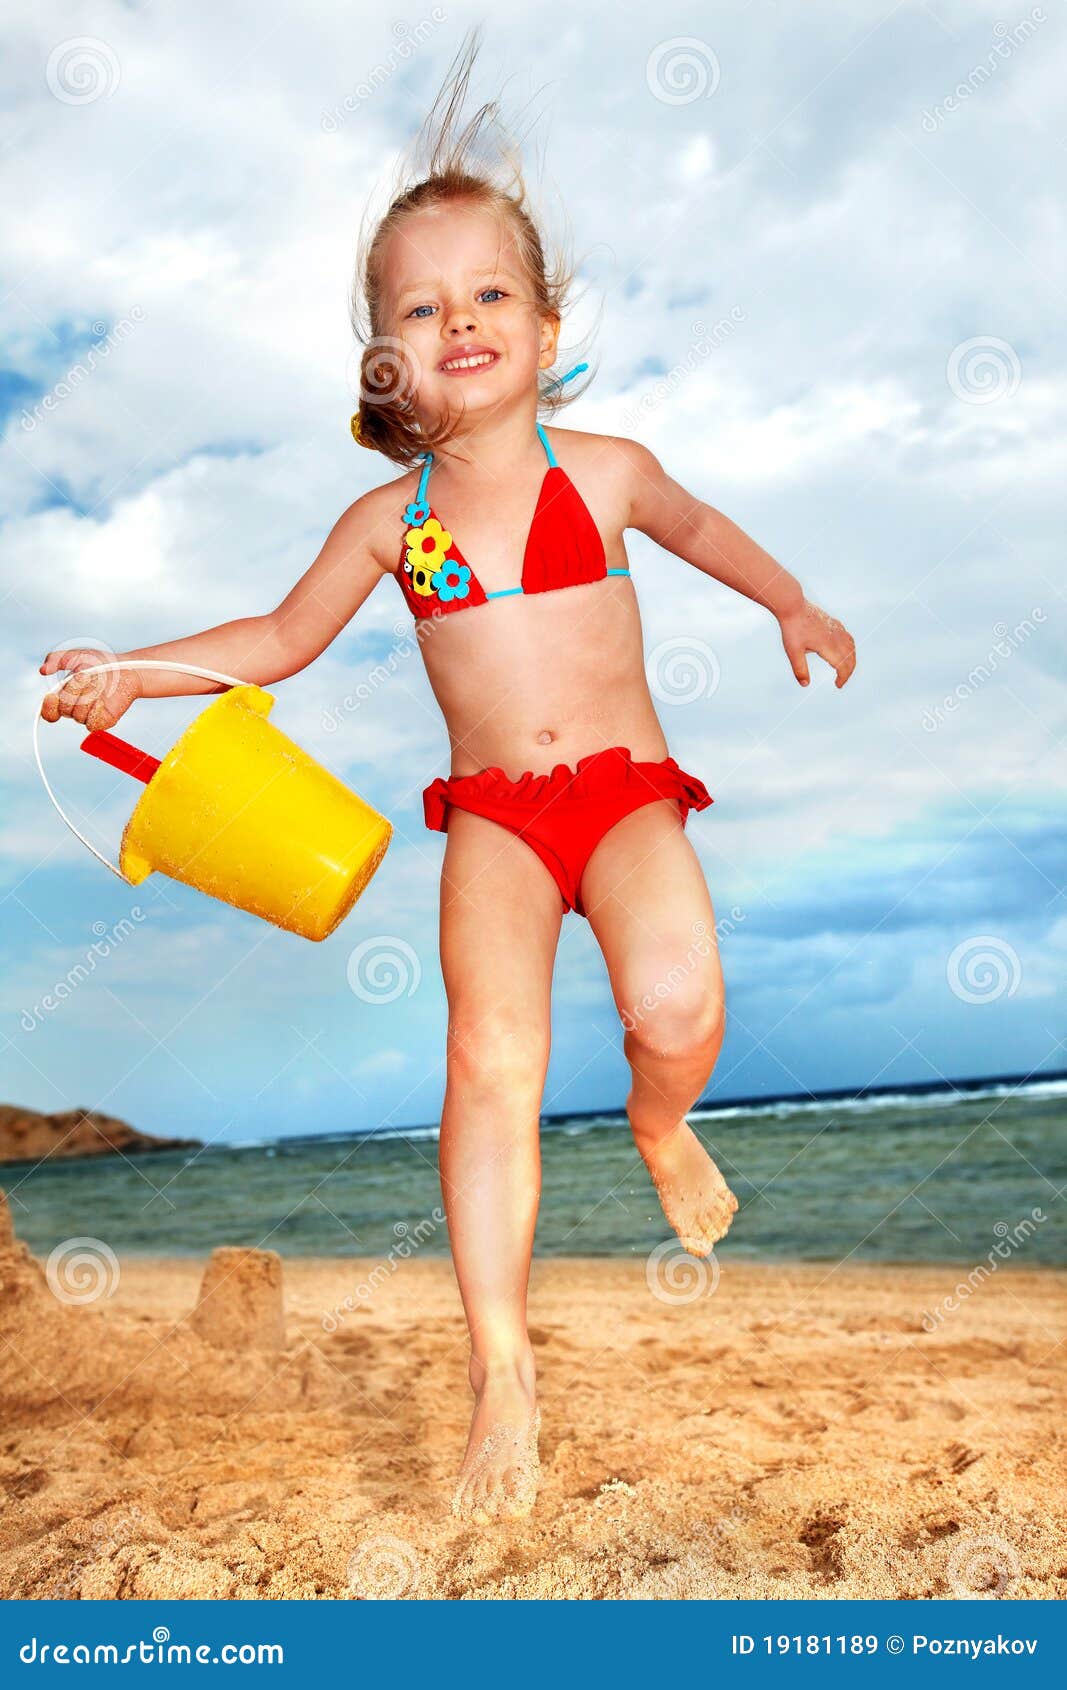 фото детей на голом пляже фото 58